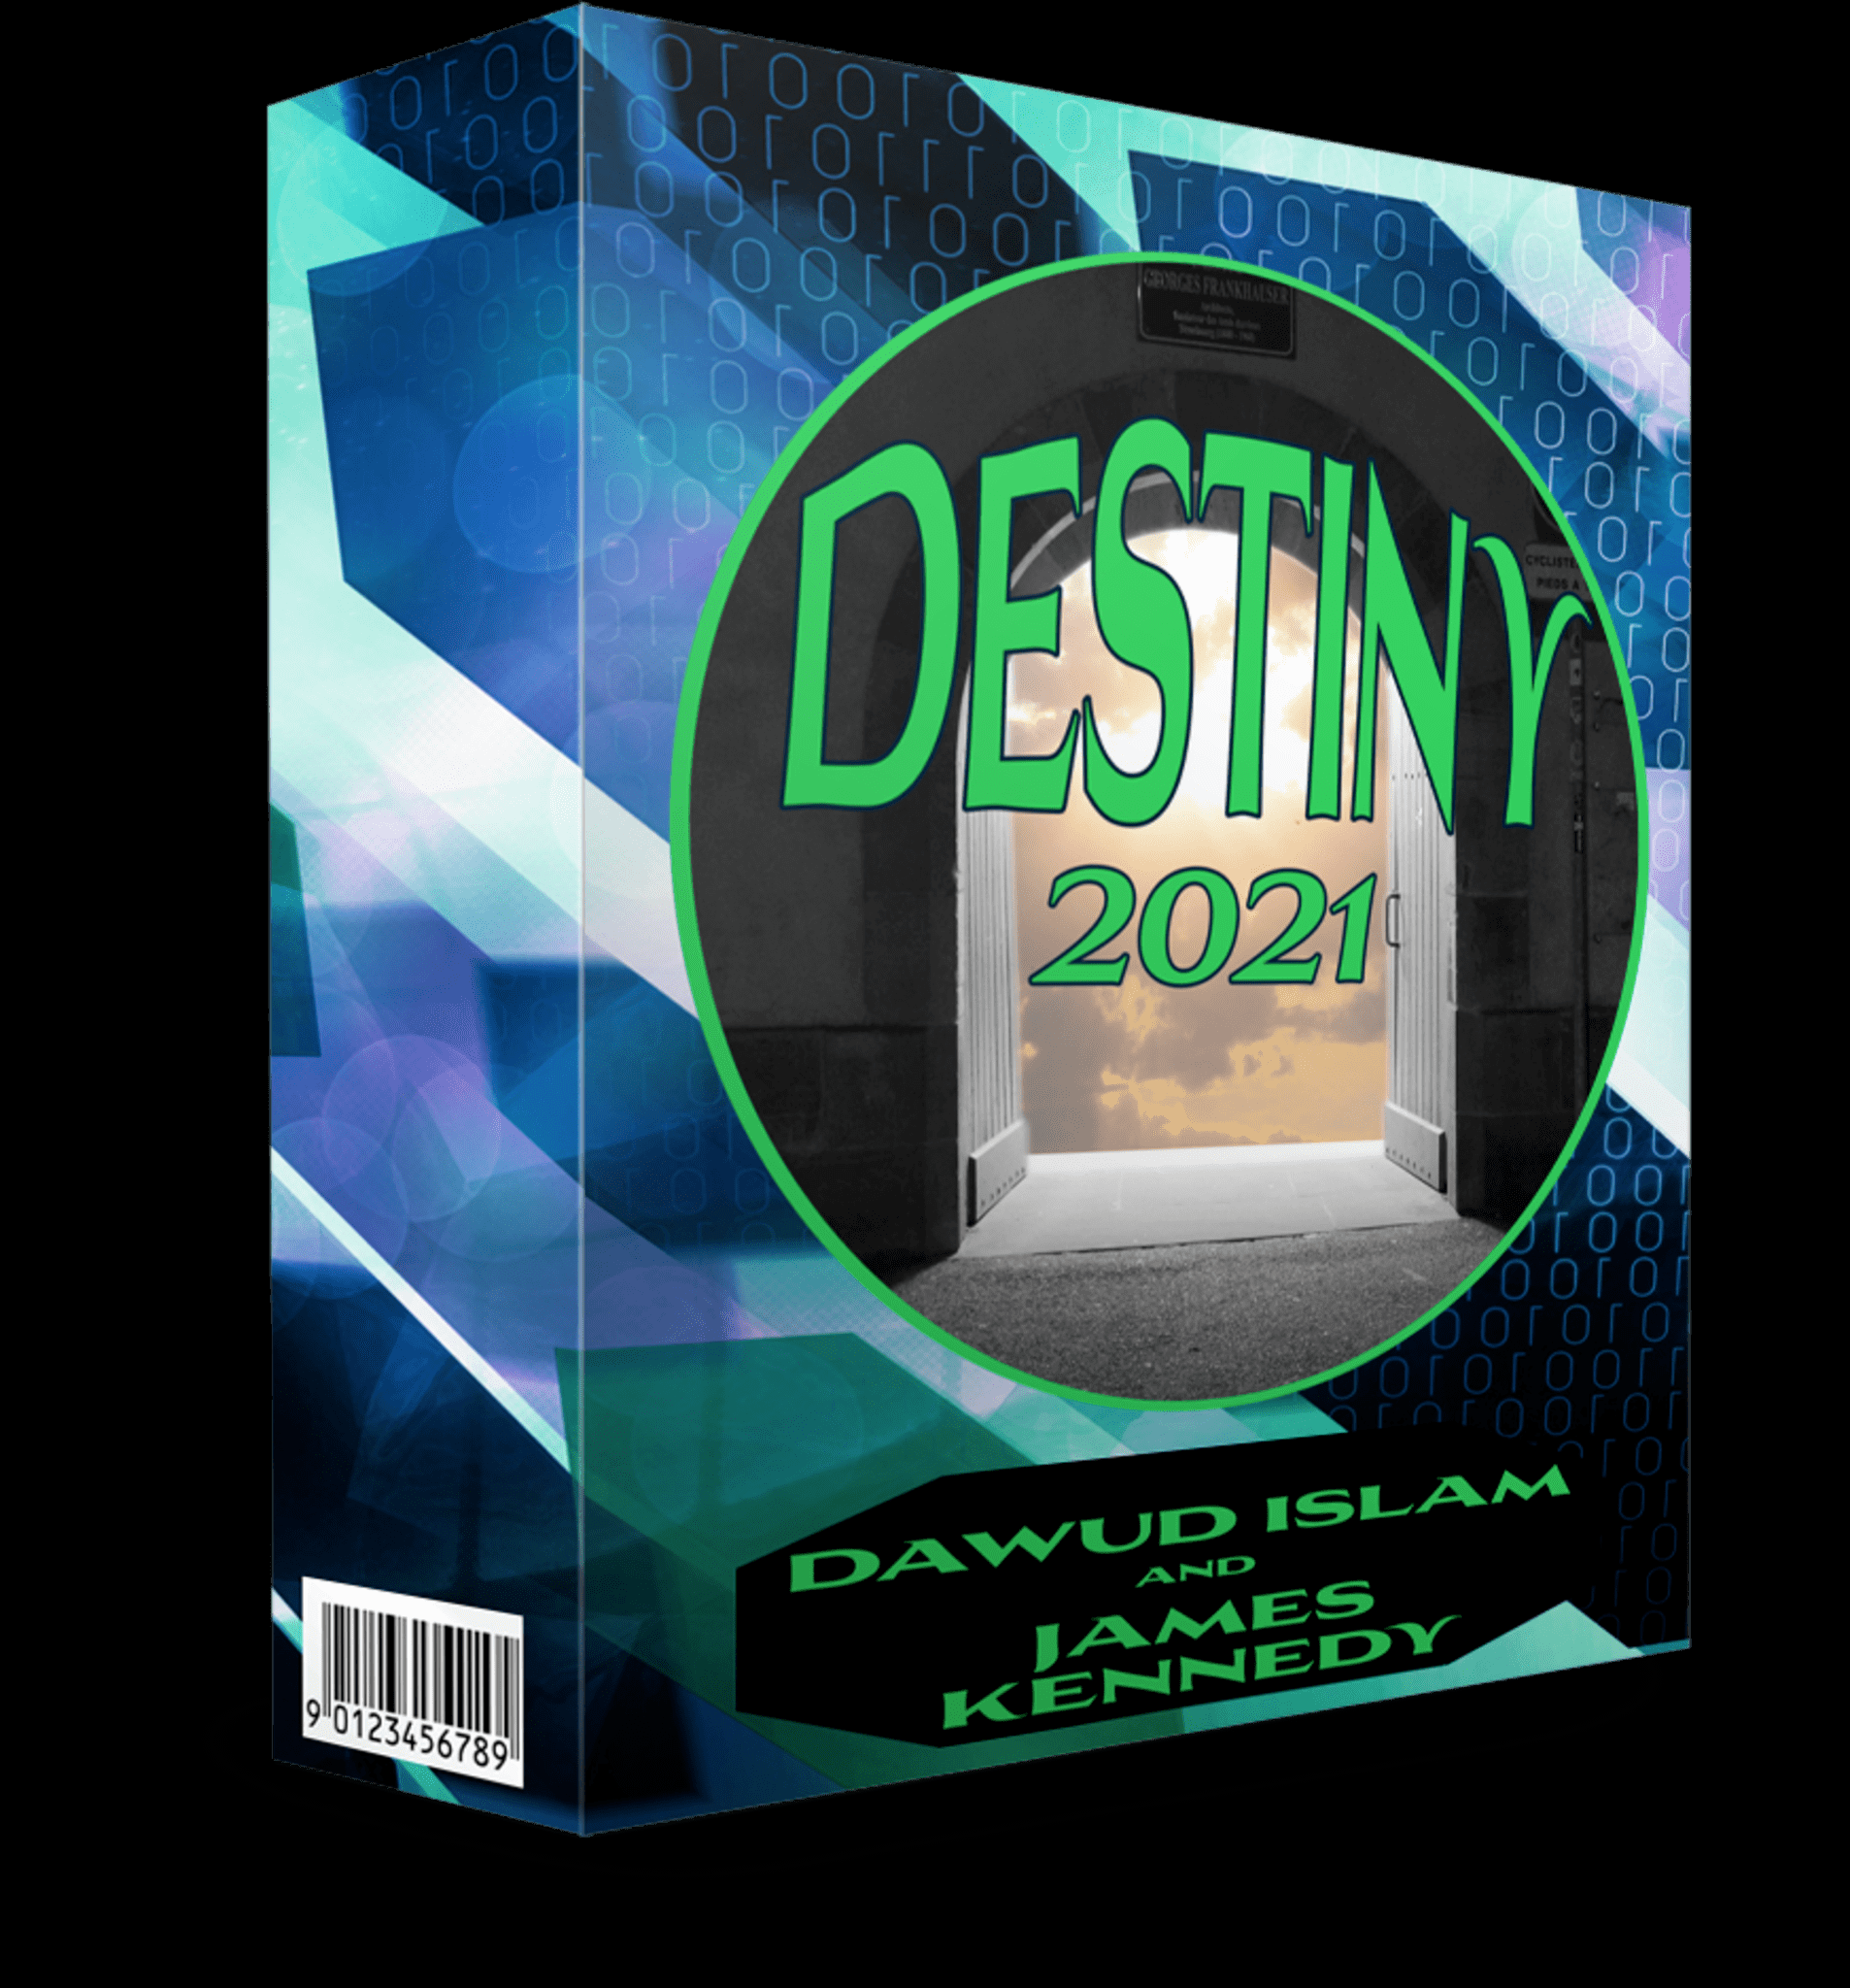 Destiny 2021 Review & Bonuses - Should I Get This Method?